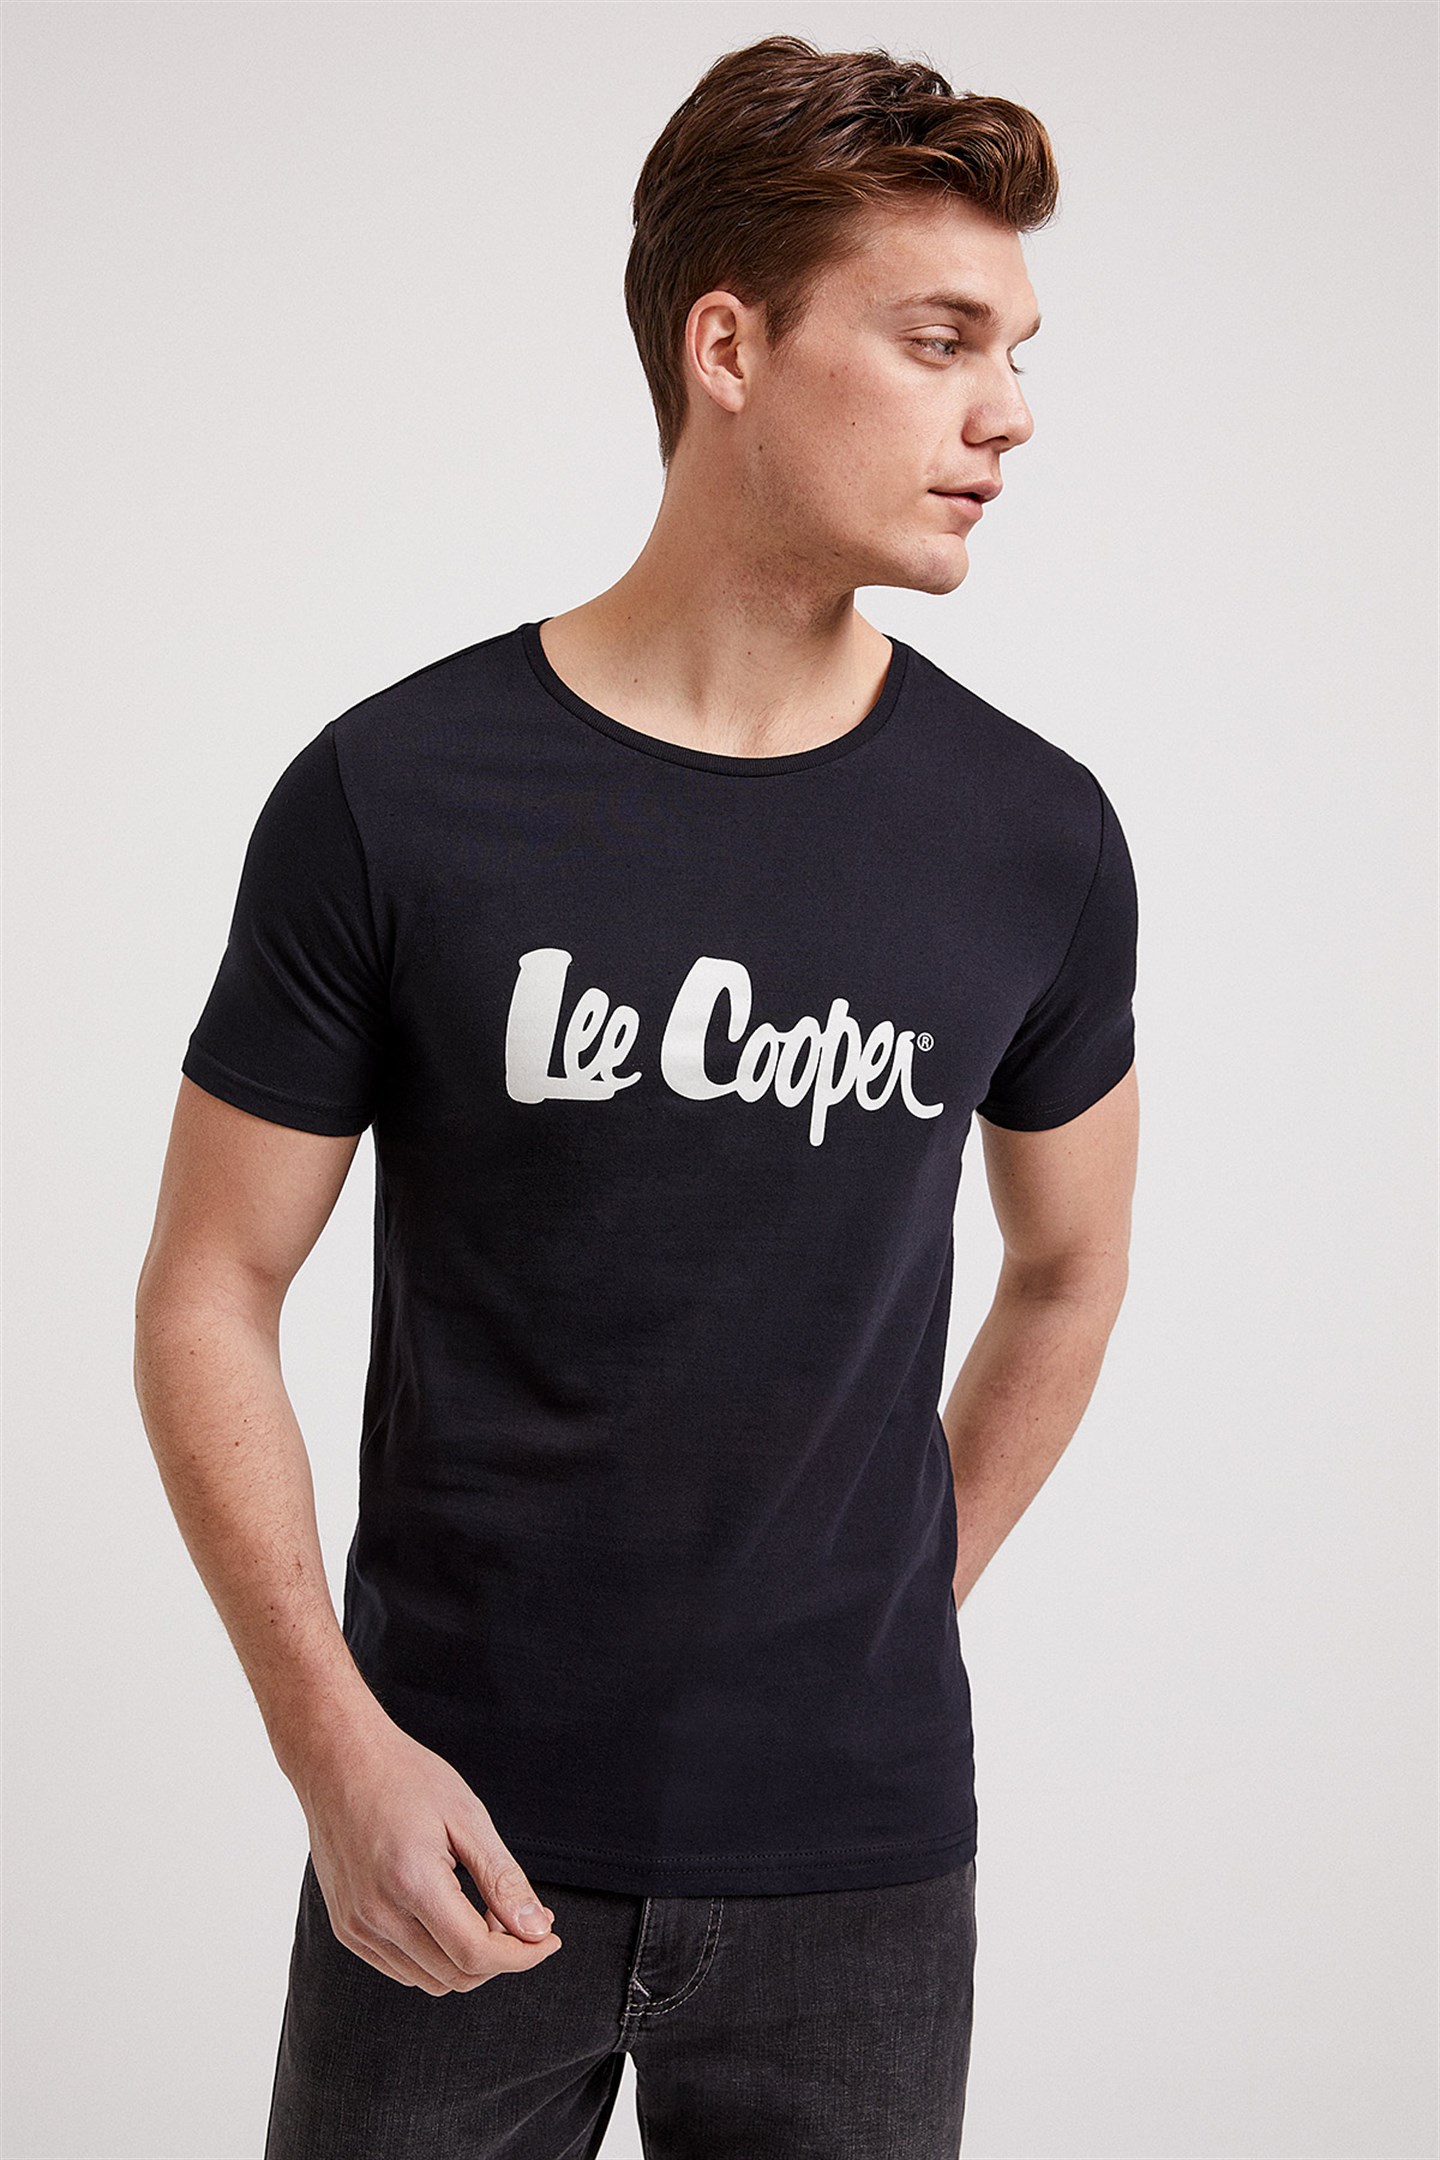 Lee Cooper Londonlogo Erkek Bisiklet Yaka T-Shirt Beyaz-K. 1